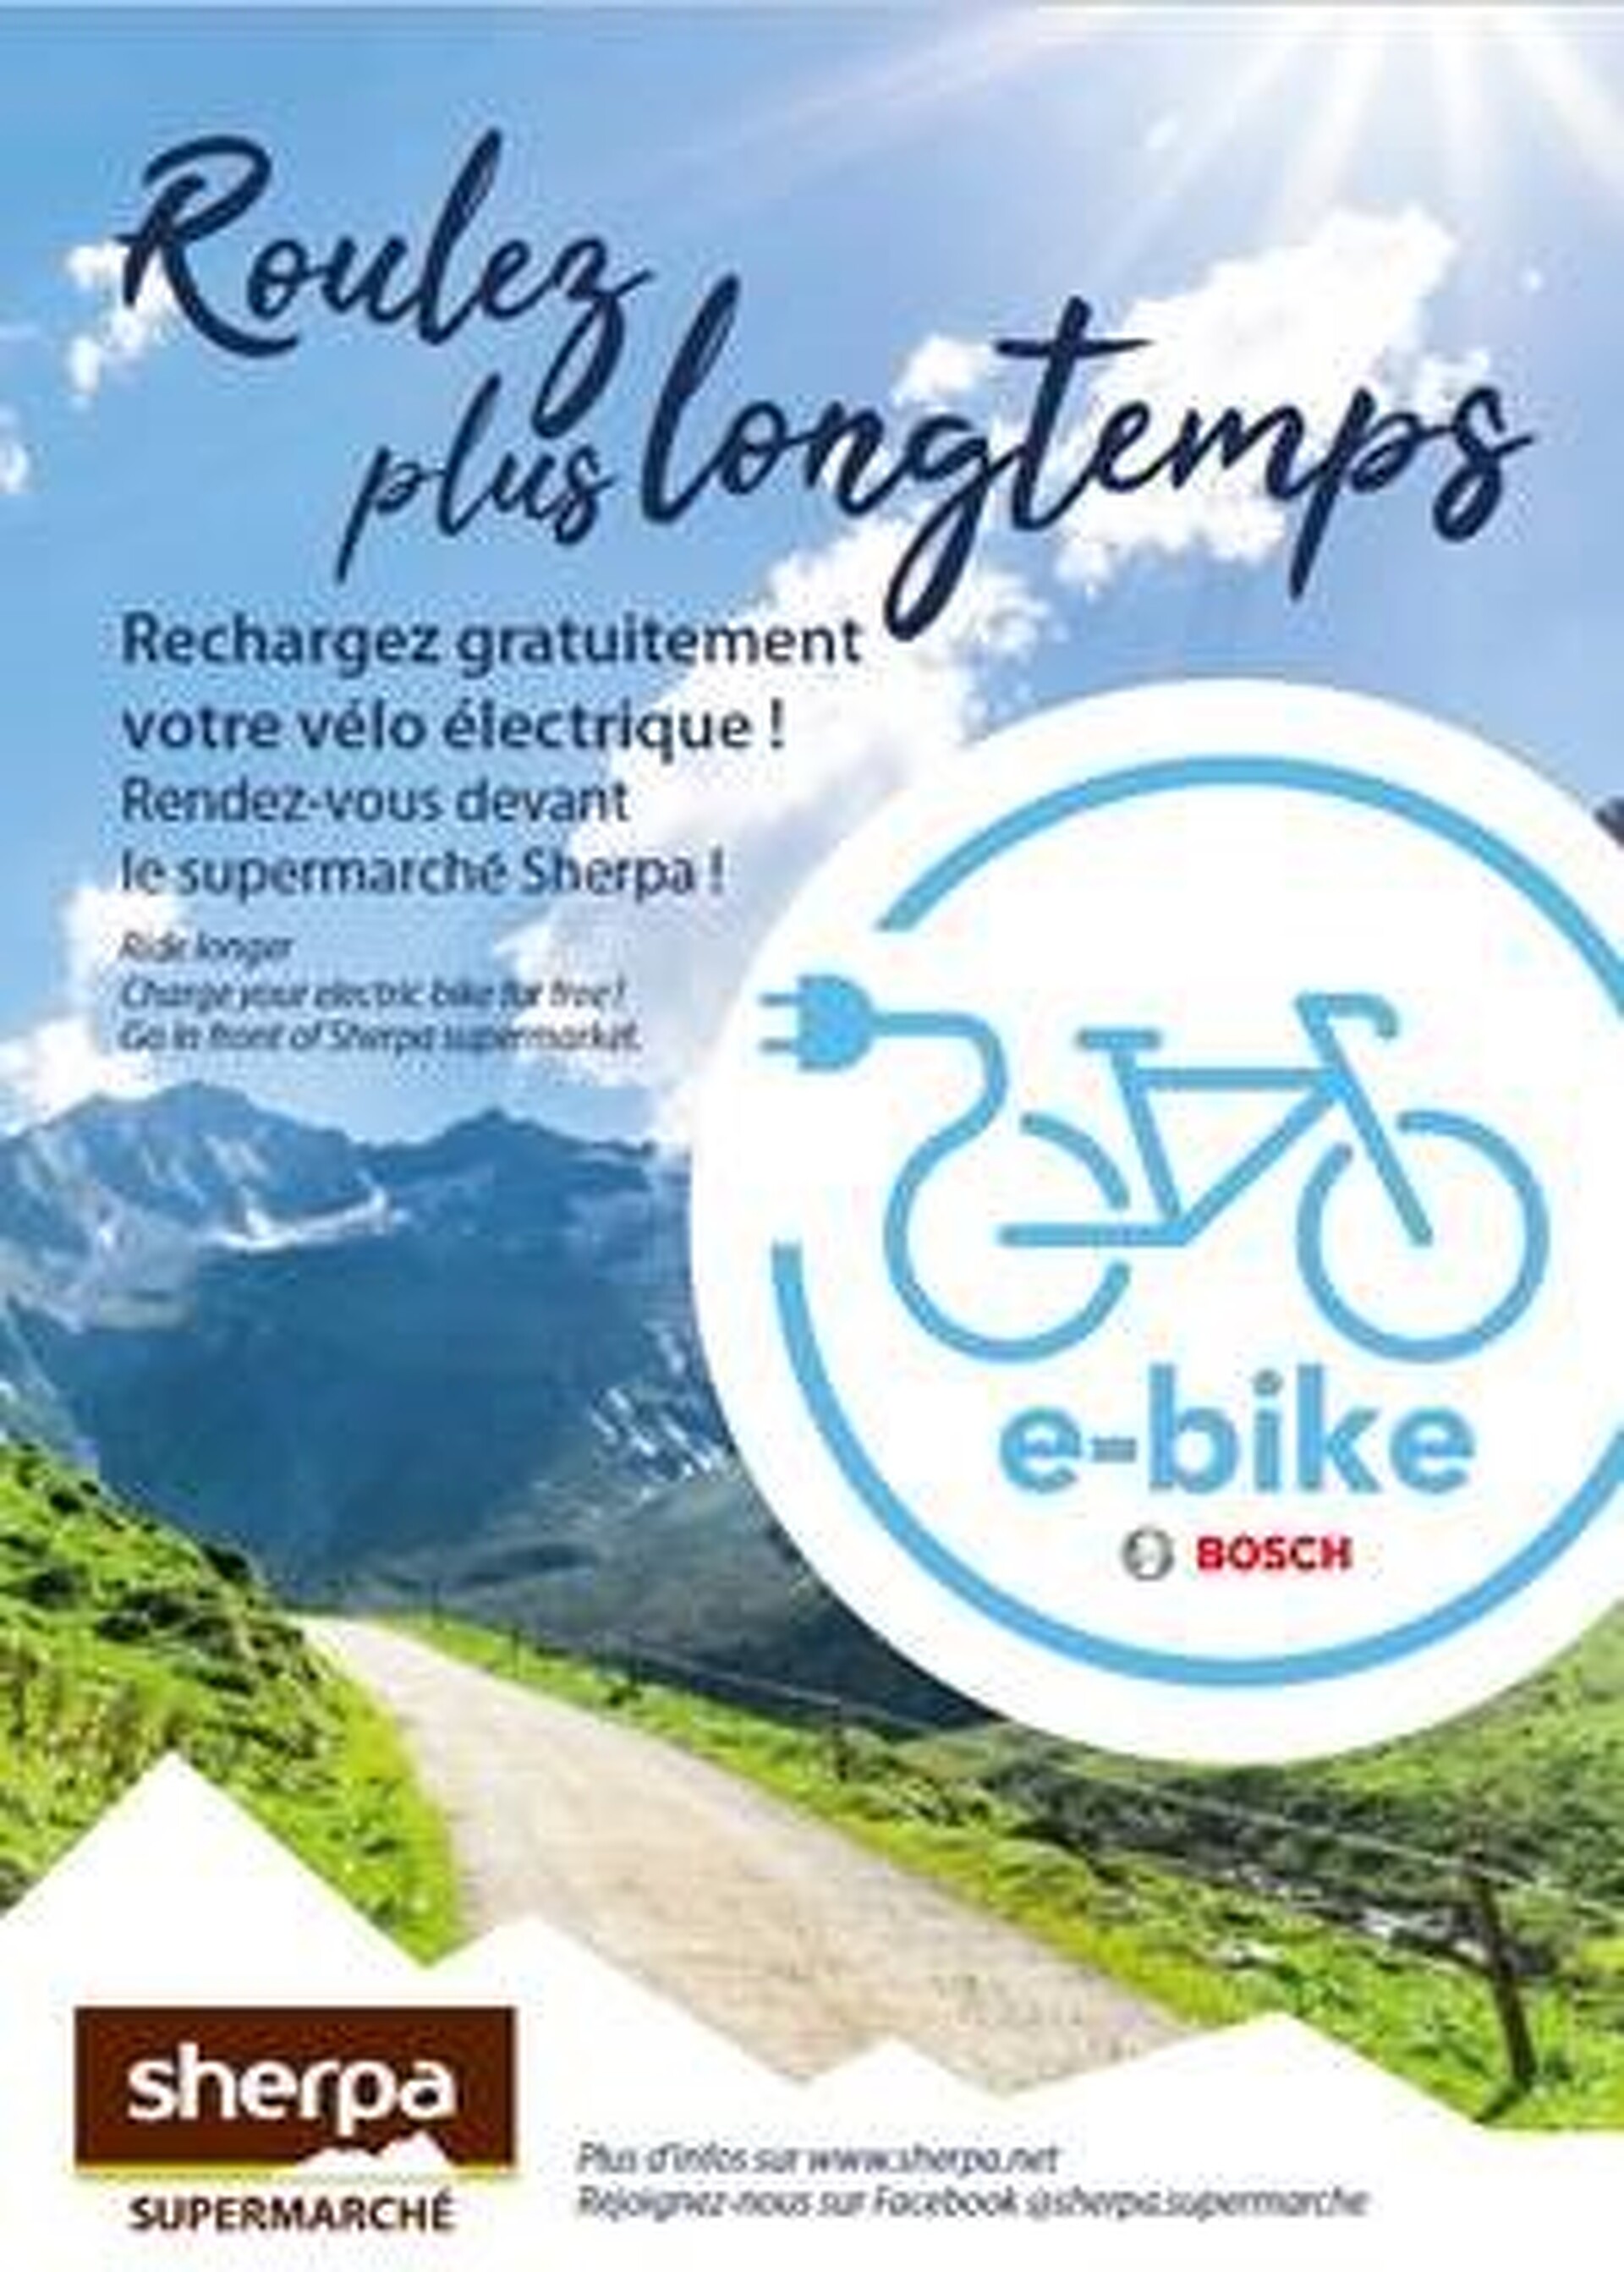 E-bike charging point